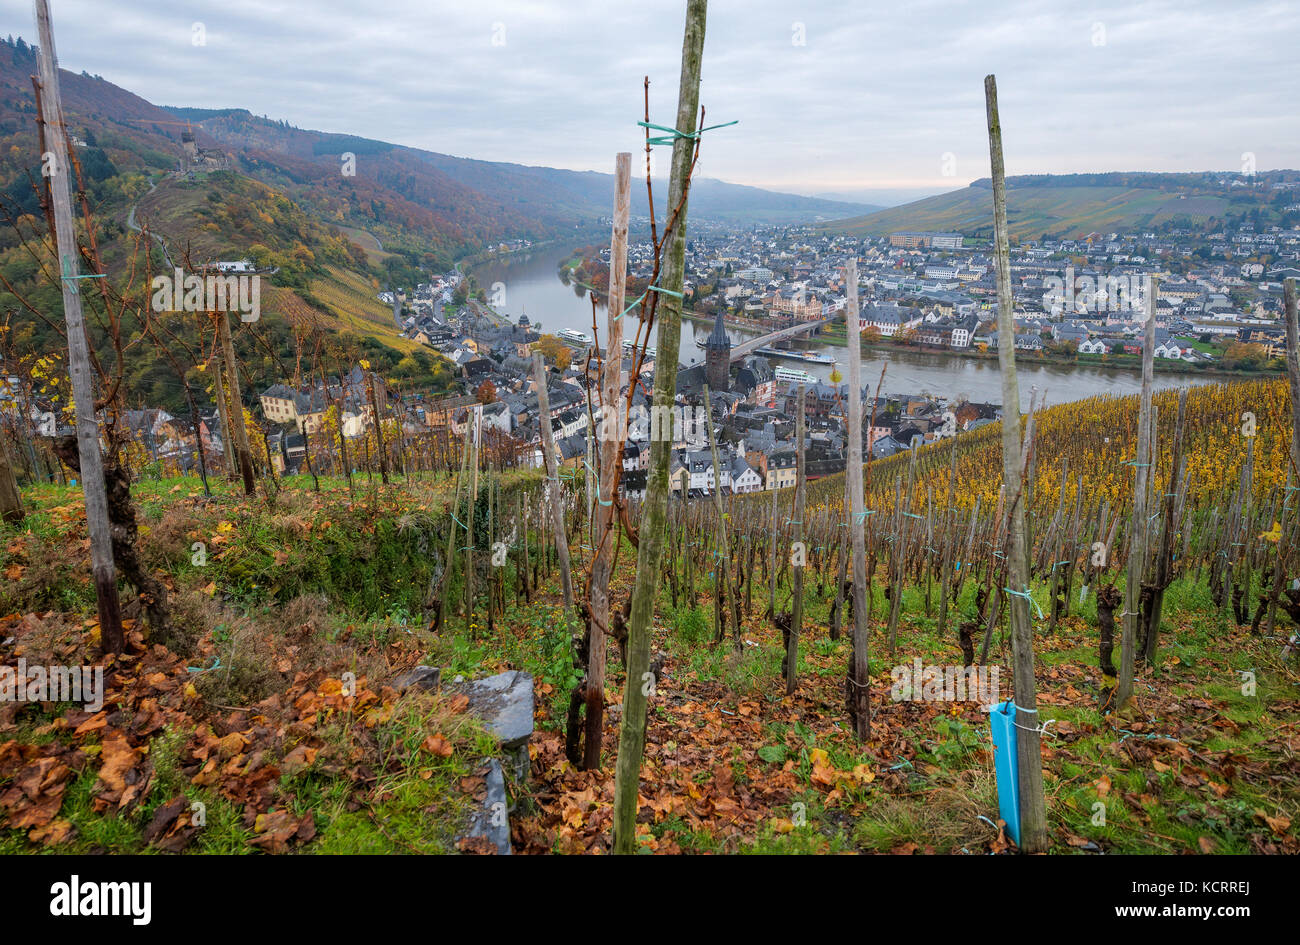 L'industrie allemande du vin : vieilles vignes à Bernkasteler Doctor, Bernkastel-Kues, Mosel, Allemagne Banque D'Images